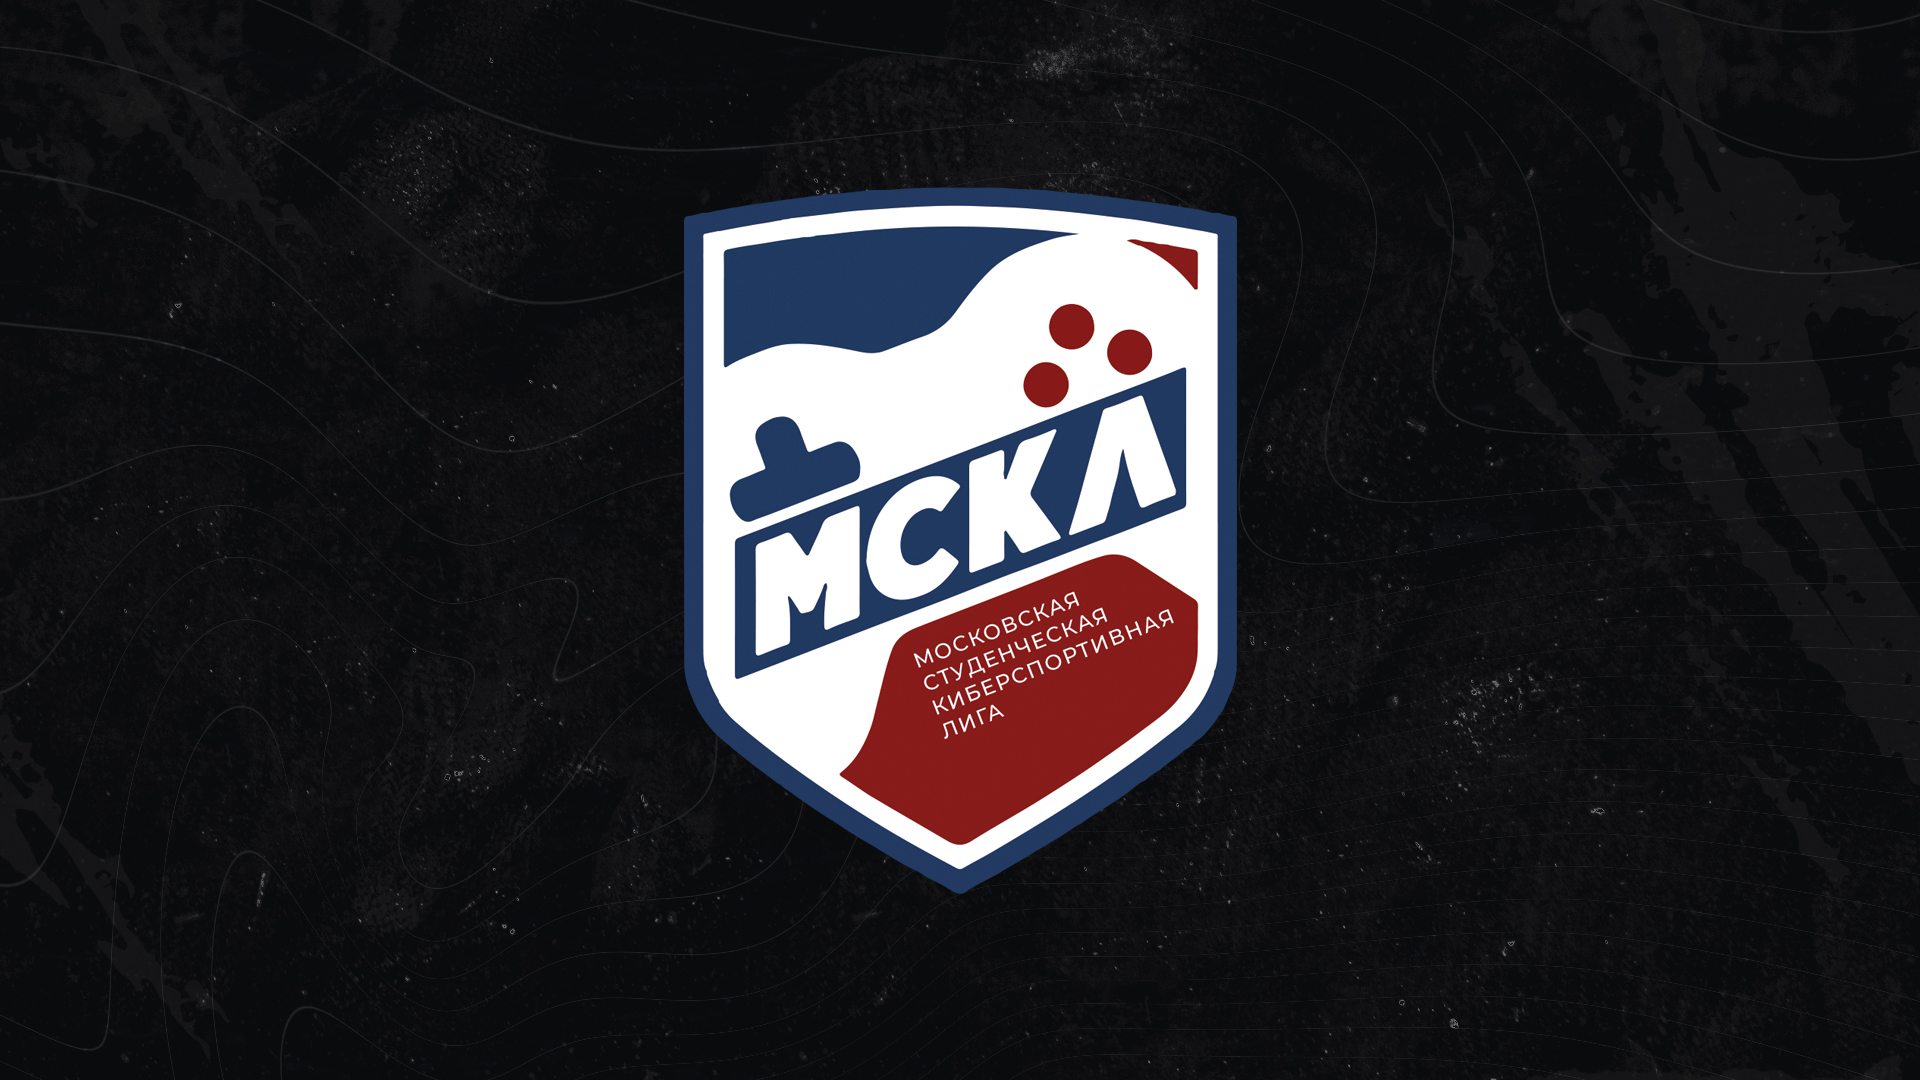 Гранд-финал XII сезона Московской Студенческой Киберспортивной Лиги состоится 31 марта